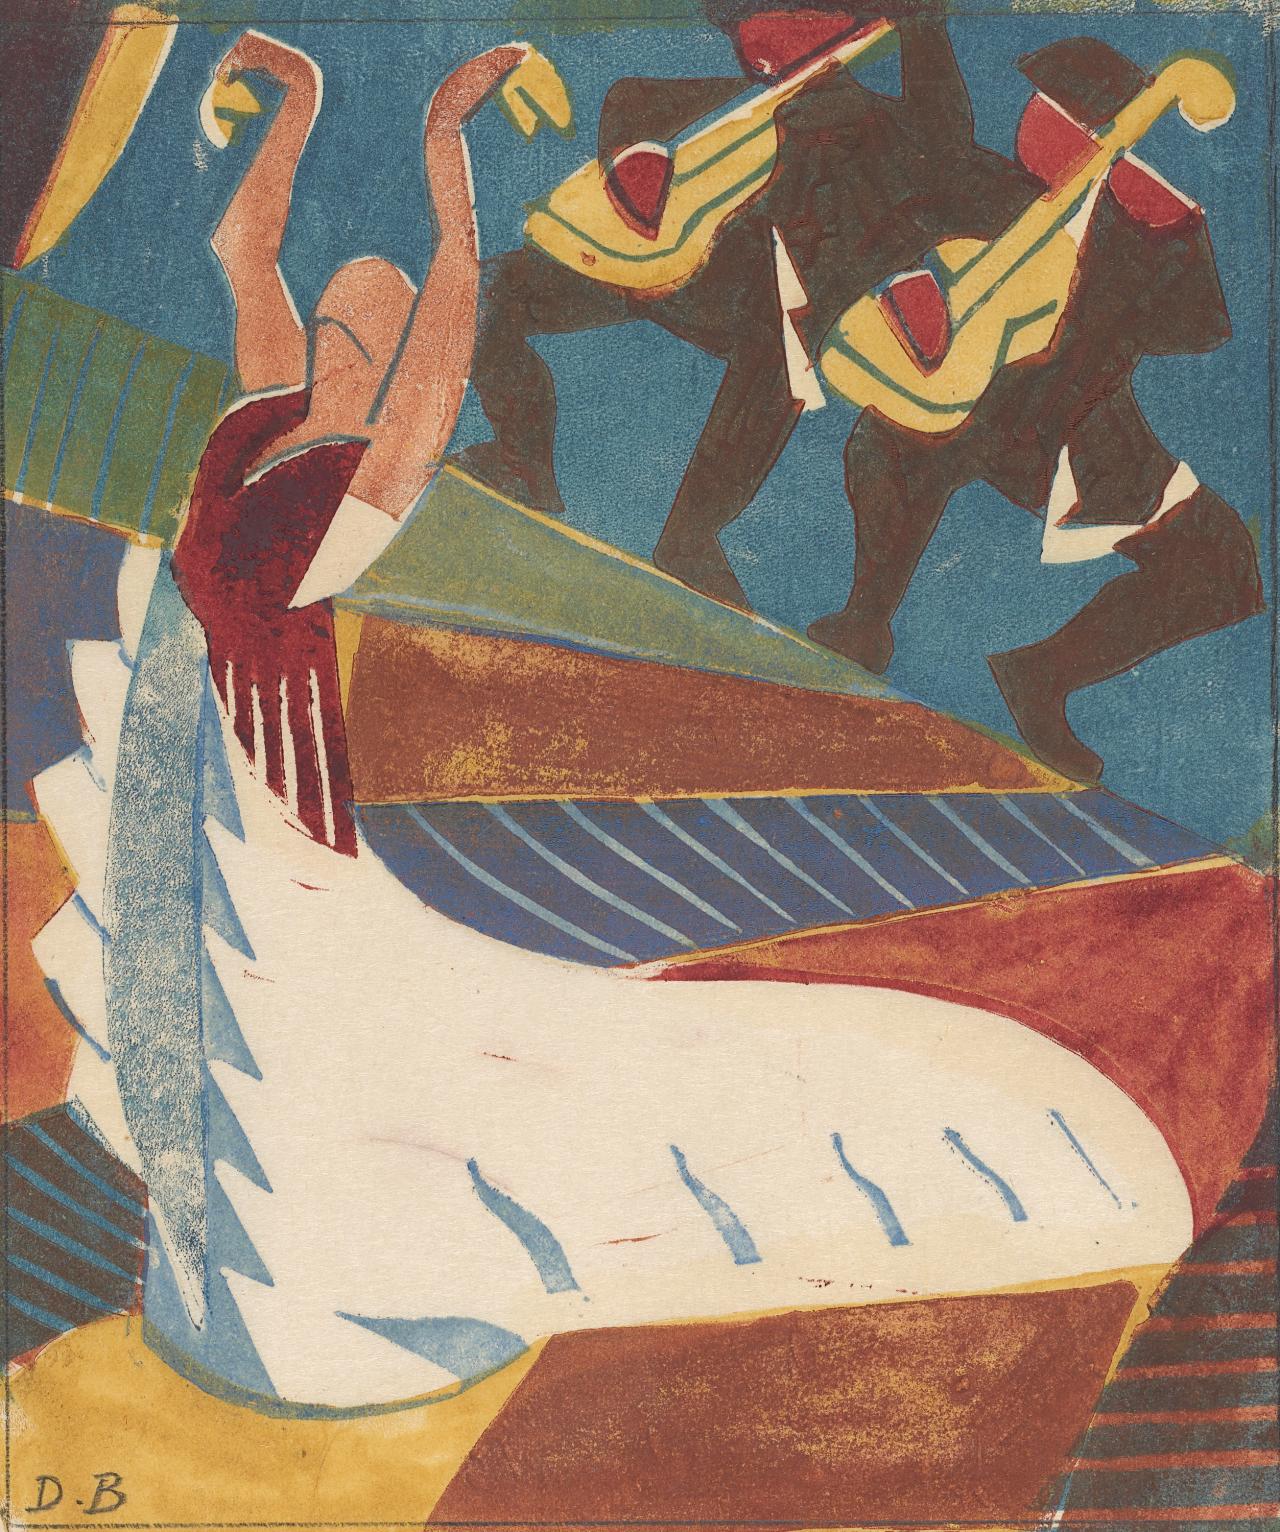 Аргентина (Іспанська танцівниця) by Dorrit Black - бл. 1929 - 18.8 × 16.0 см 